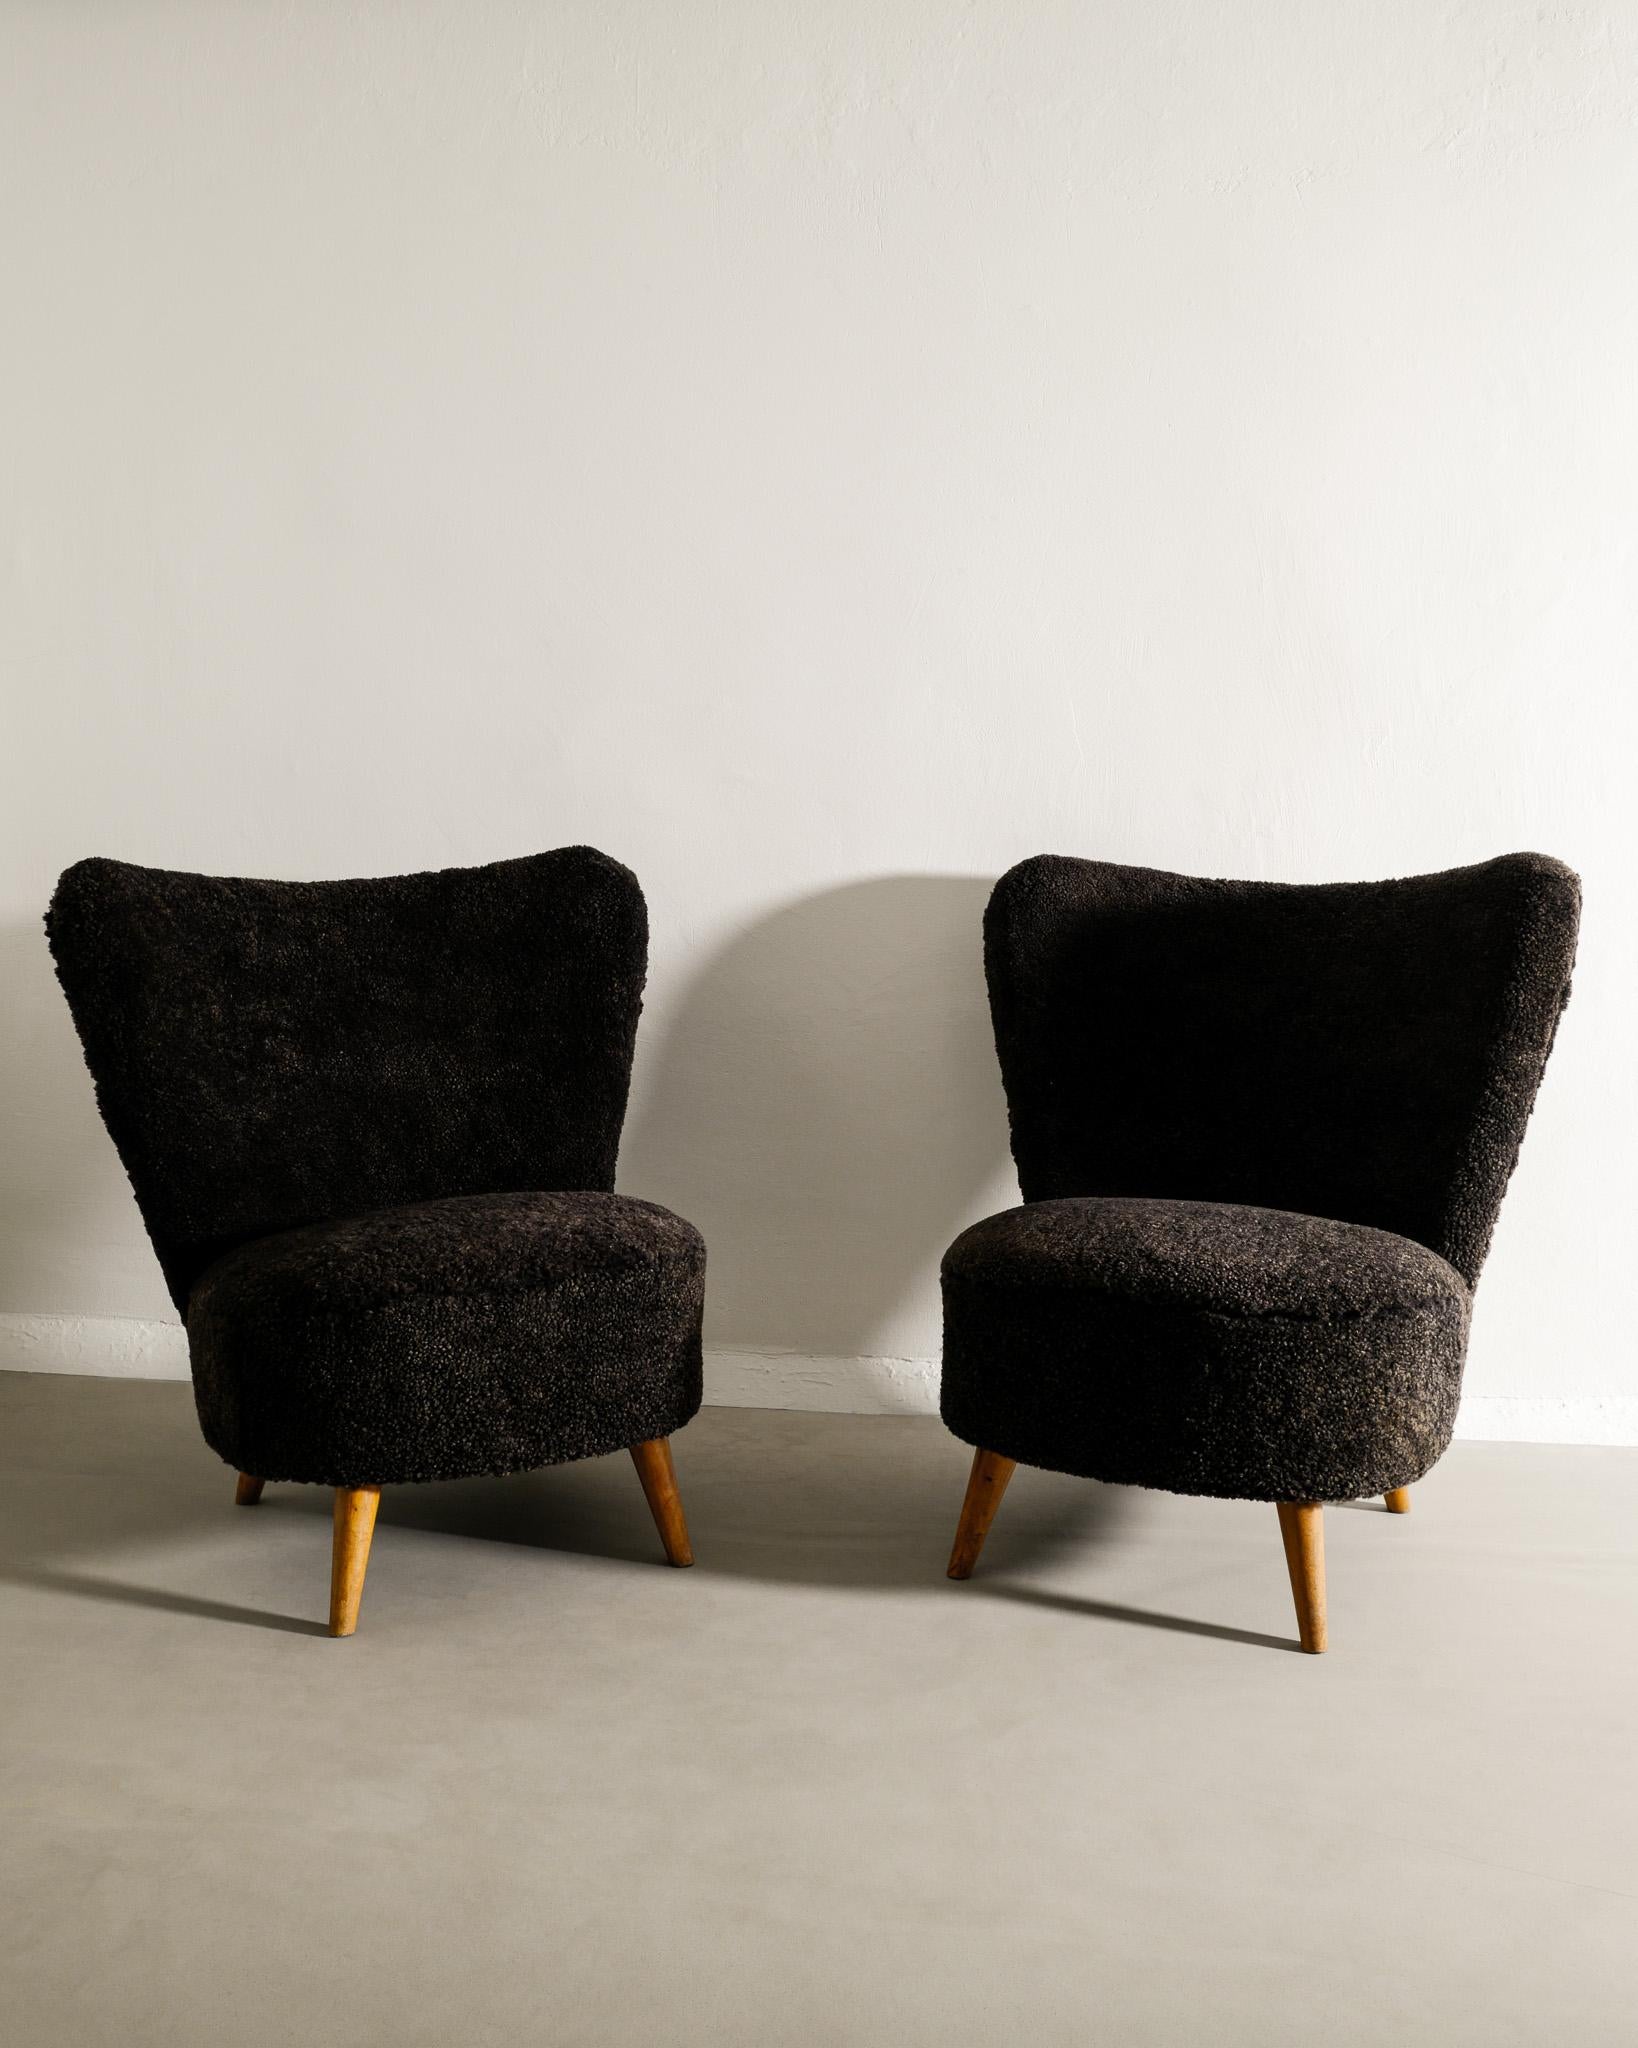 Seltenes Paar Sessel aus der Mitte des Jahrhunderts, hergestellt in Schweden im Stil von Gösta Jonsson. In tollem Vintage-Zustand. Beide Stühle wurden gerade professionell restauriert und mit einem dunkelbraunen Schafsleder bezogen. 

Abmessungen: